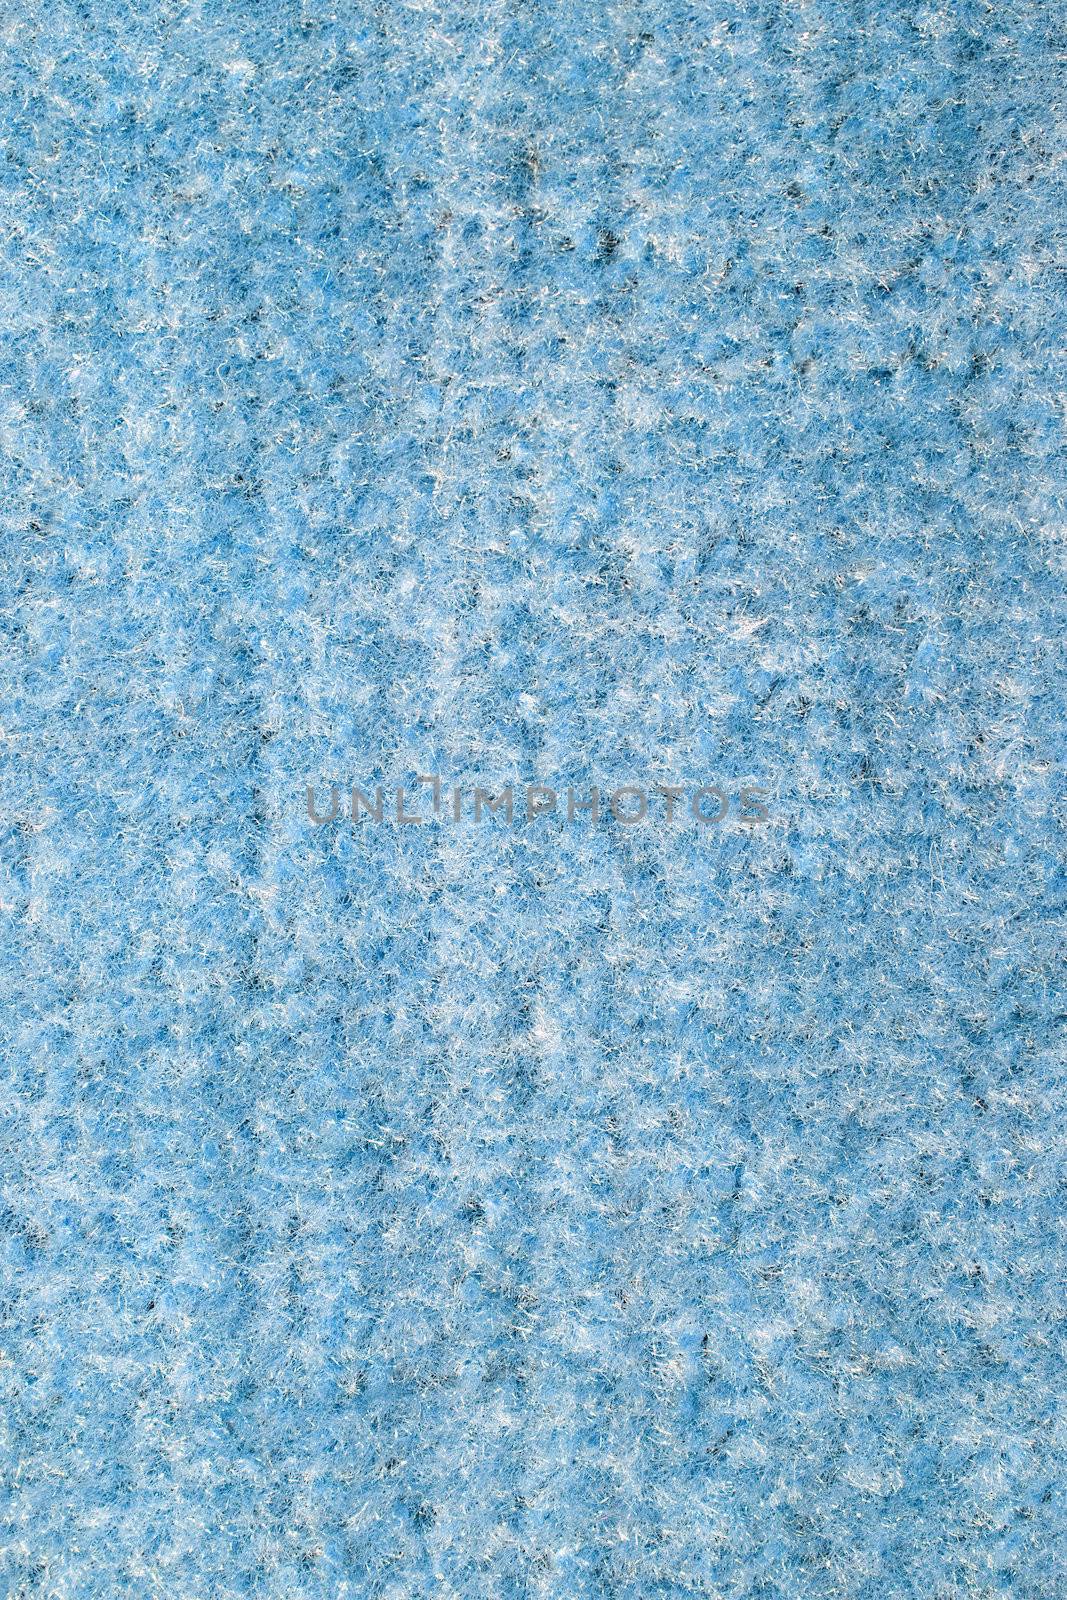 Background of blue carpet or foot scraper